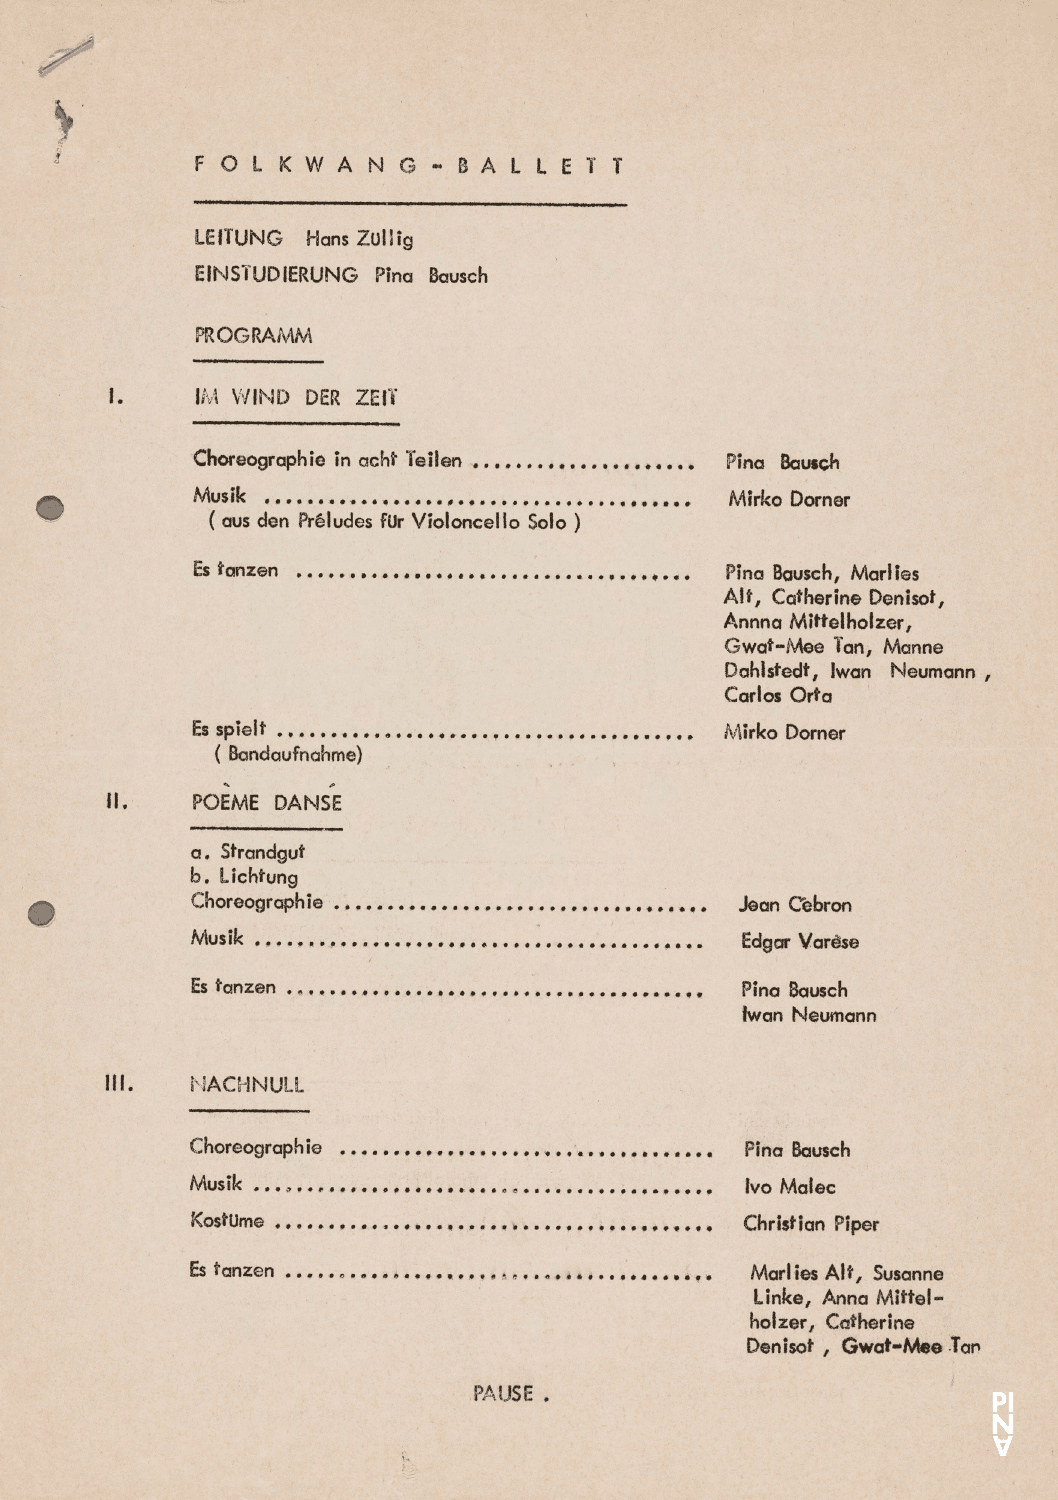 Programme pour « Im Wind der Zeit » et « Nachnull (Après Zéro) » de Pina Bausch, « 575 Riverside-Drive » de Anna Mittelholzer, « Songs of Encounter » de Lucas Hoving et « Poème dansé » et « Recueil » de Jean Cébron